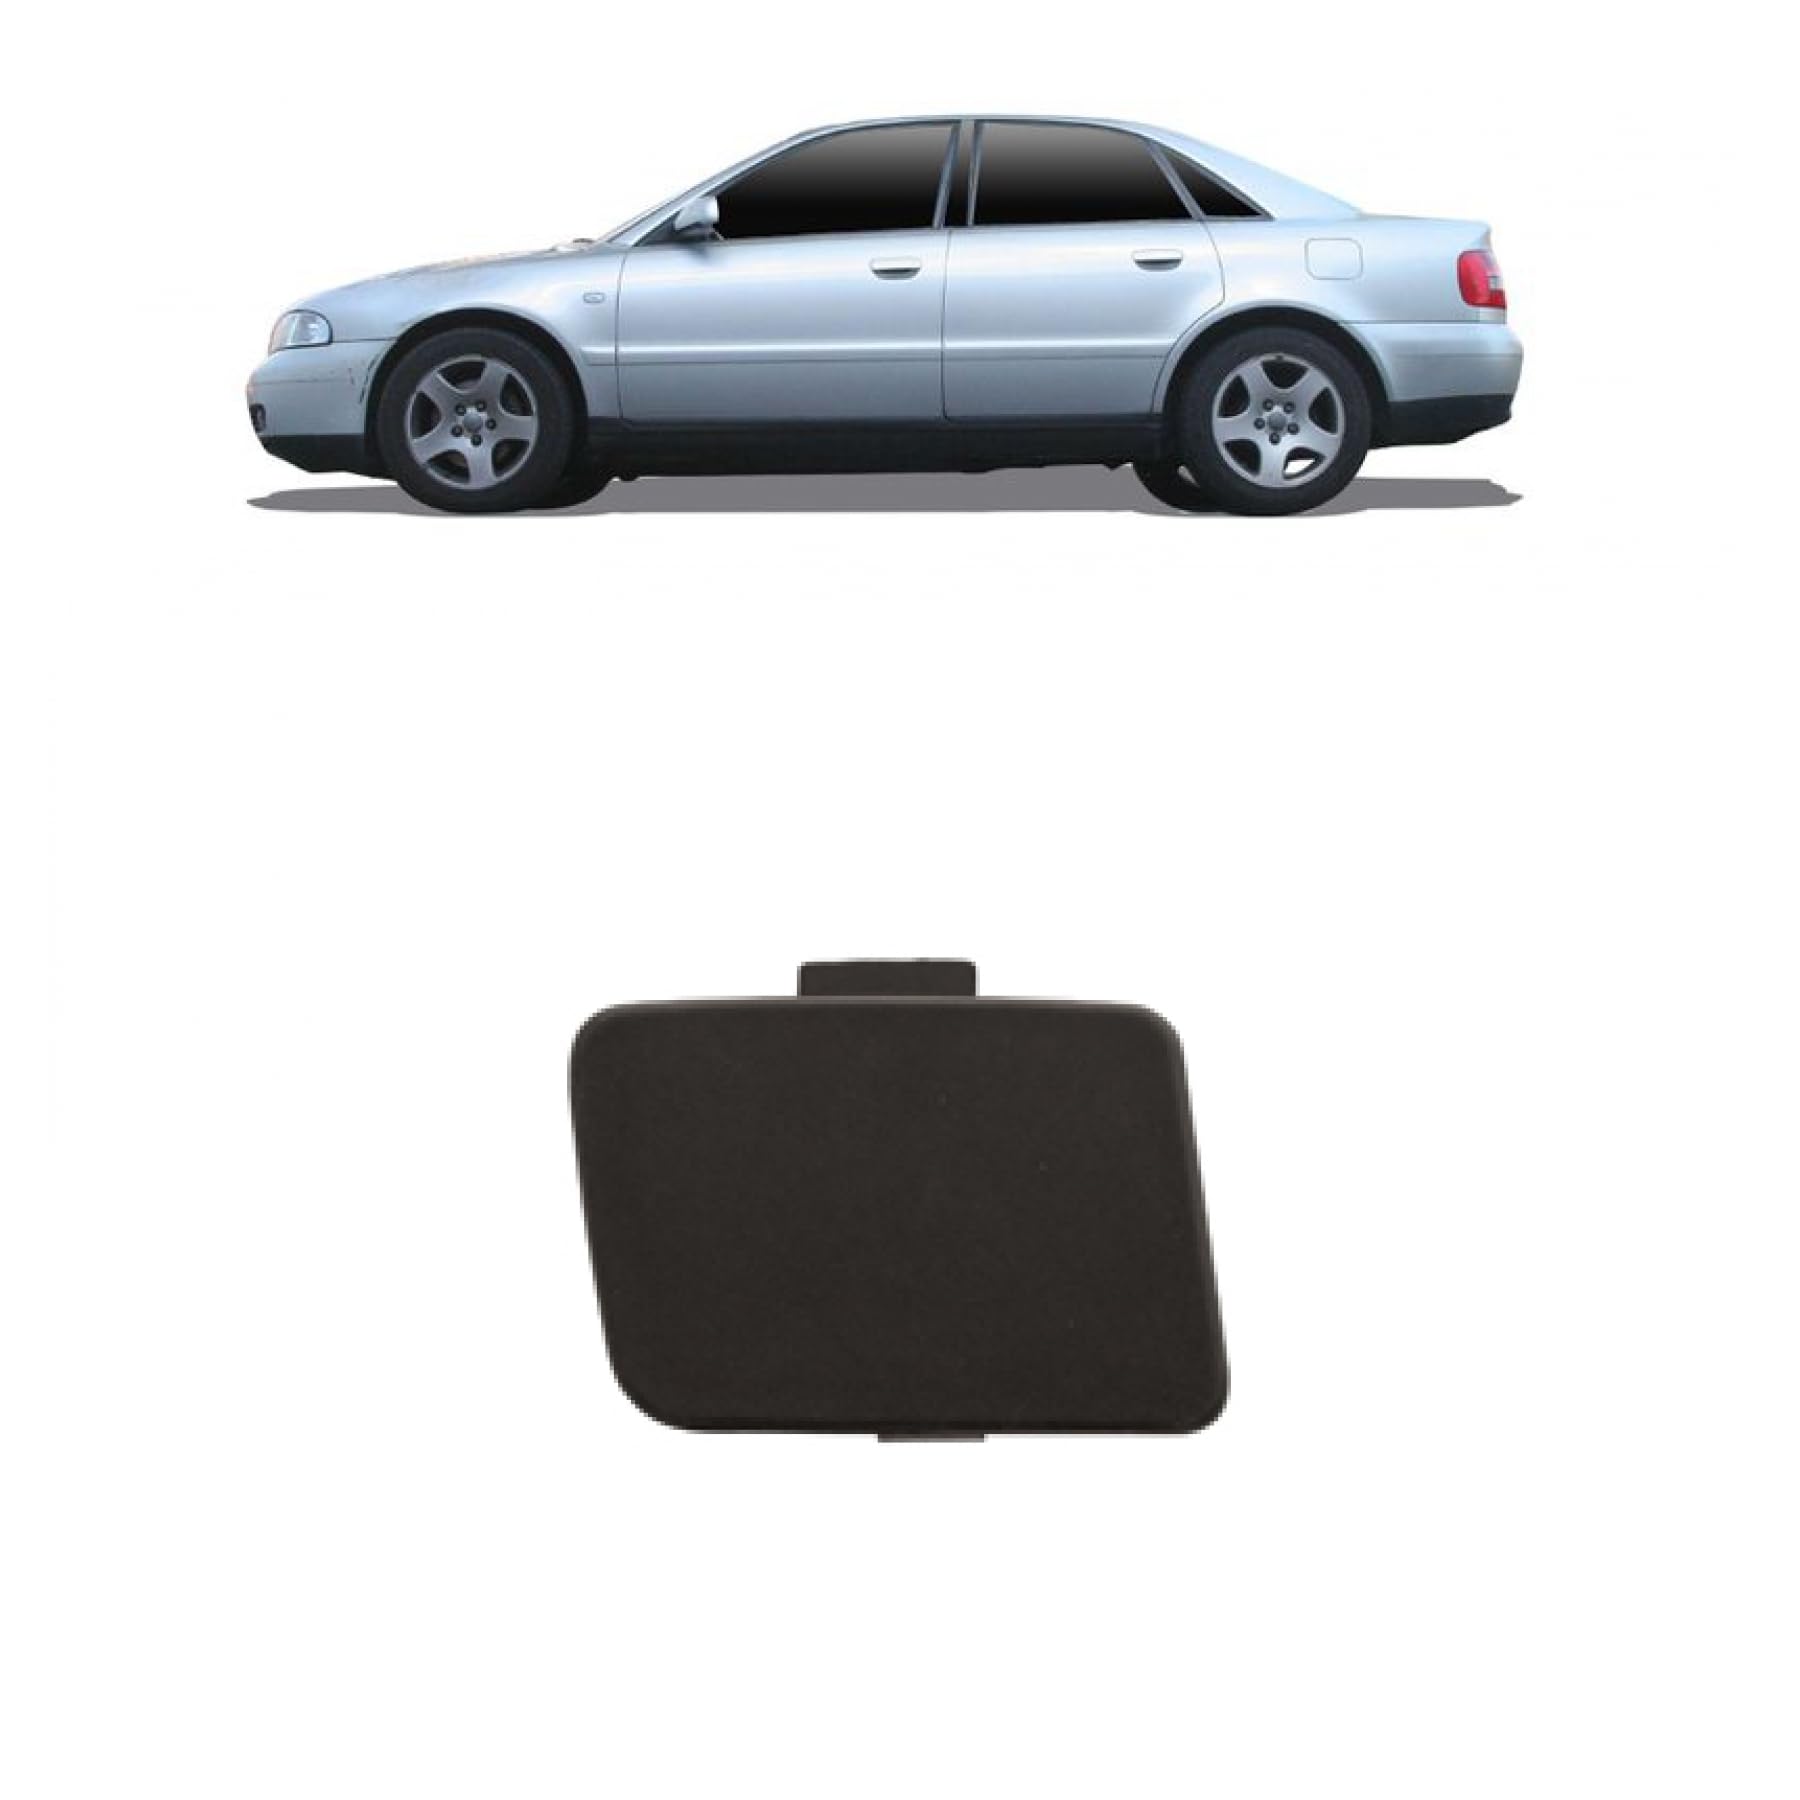 DM Autoteile Abschlepphaken Abdeckung Zughaken Stoßstange vorne kompatibel für Audi A4 B6 00-04 von DM Autoteile